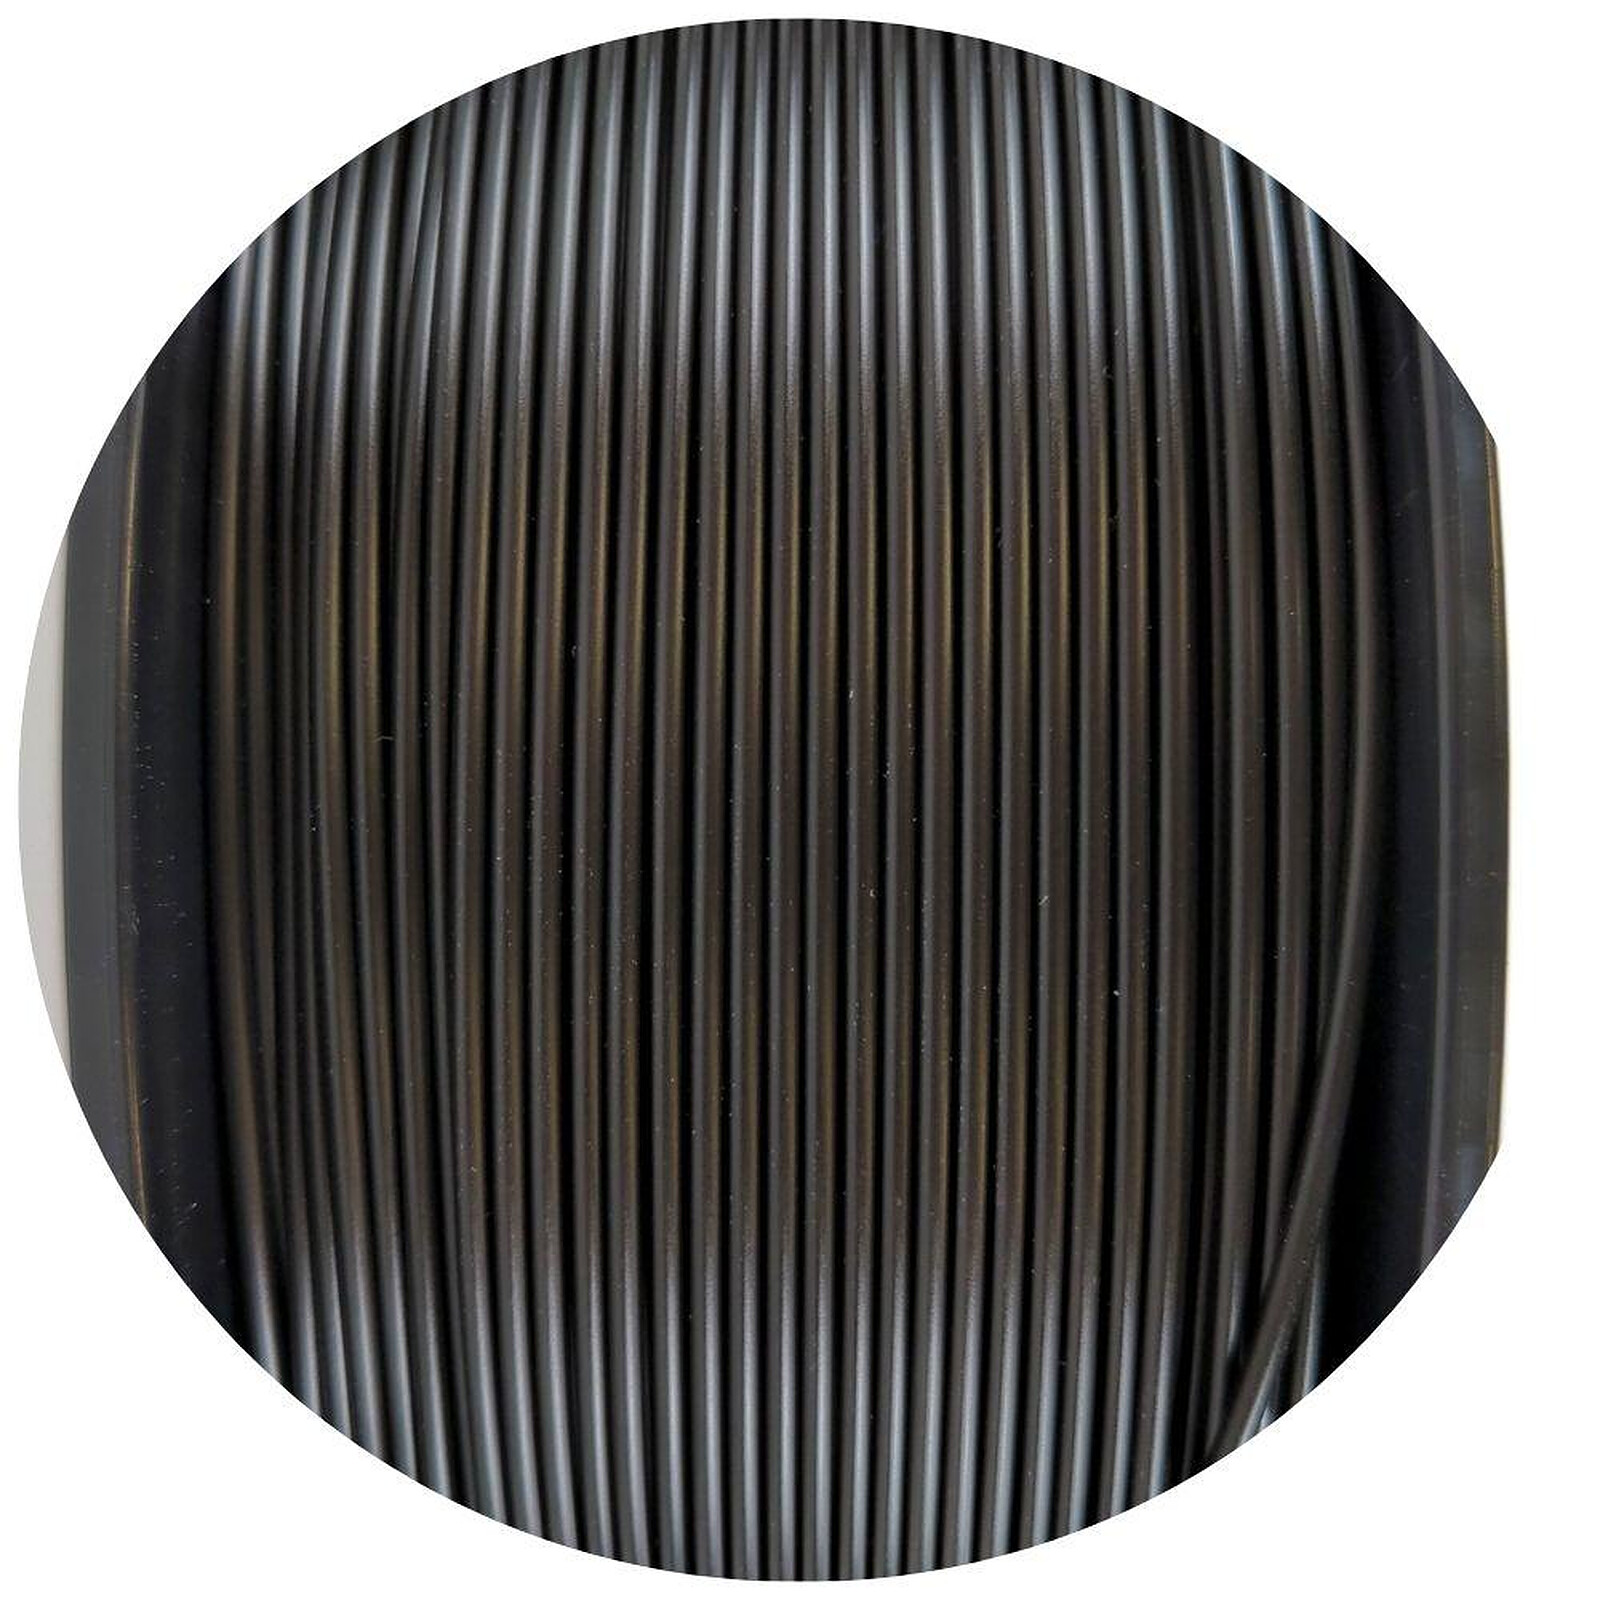 Chromatik - PLA Noir 4000g - Filament 1.75mm - Filament 3D - LDLC